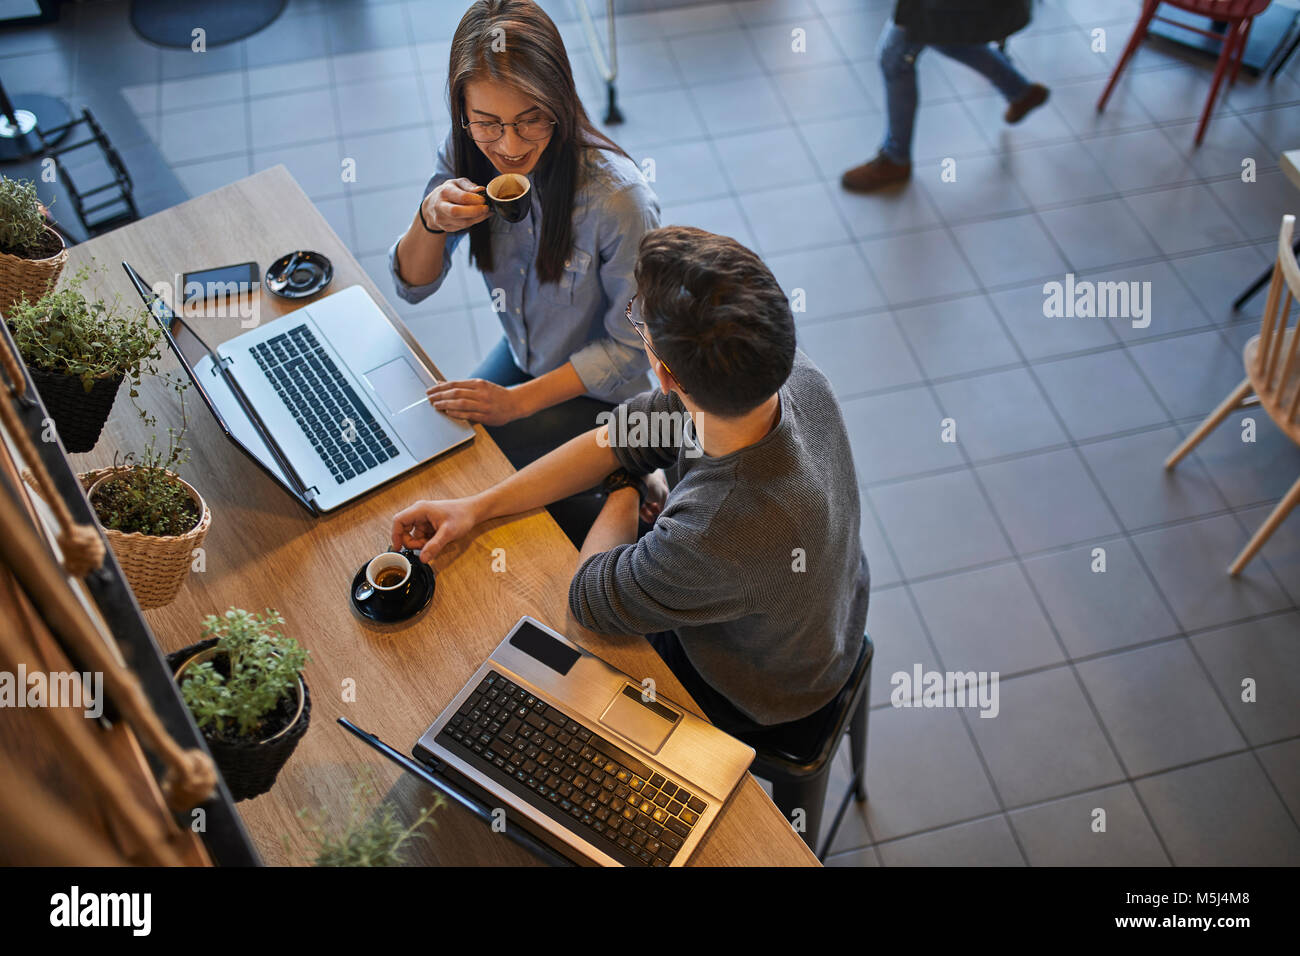 Jeune femme et l'homme dans un café avec des ordinateurs portables de parler et de boire l'expresso Banque D'Images